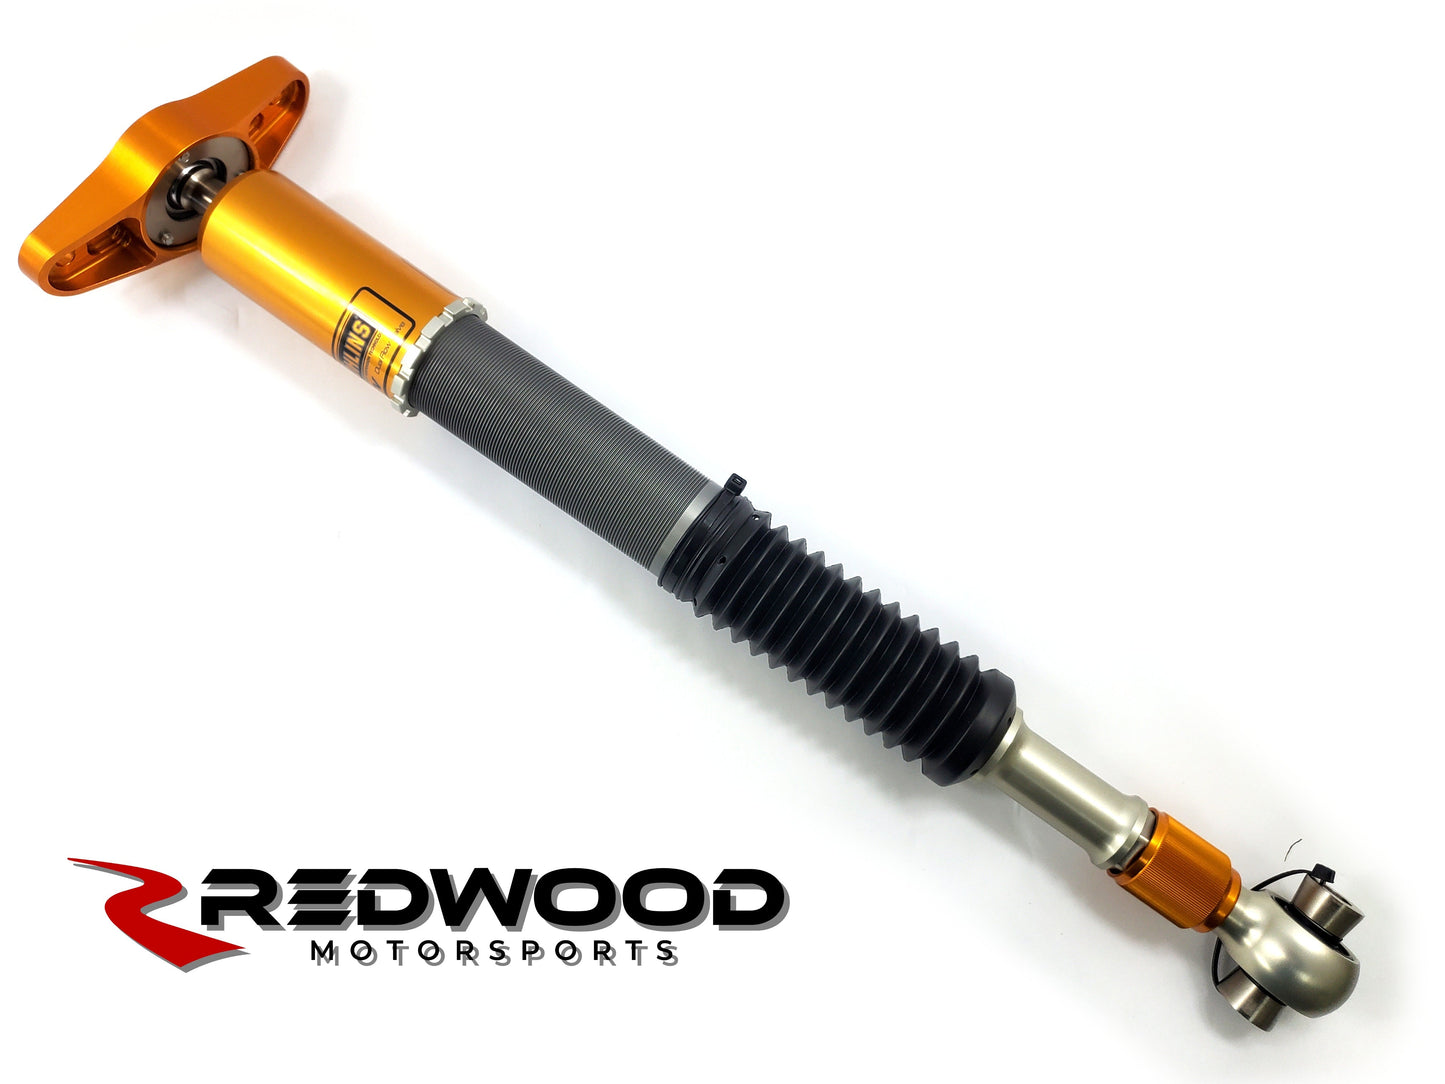 Redwood Motorsports - Model 3 Öhlins DFV coilovers - AWD